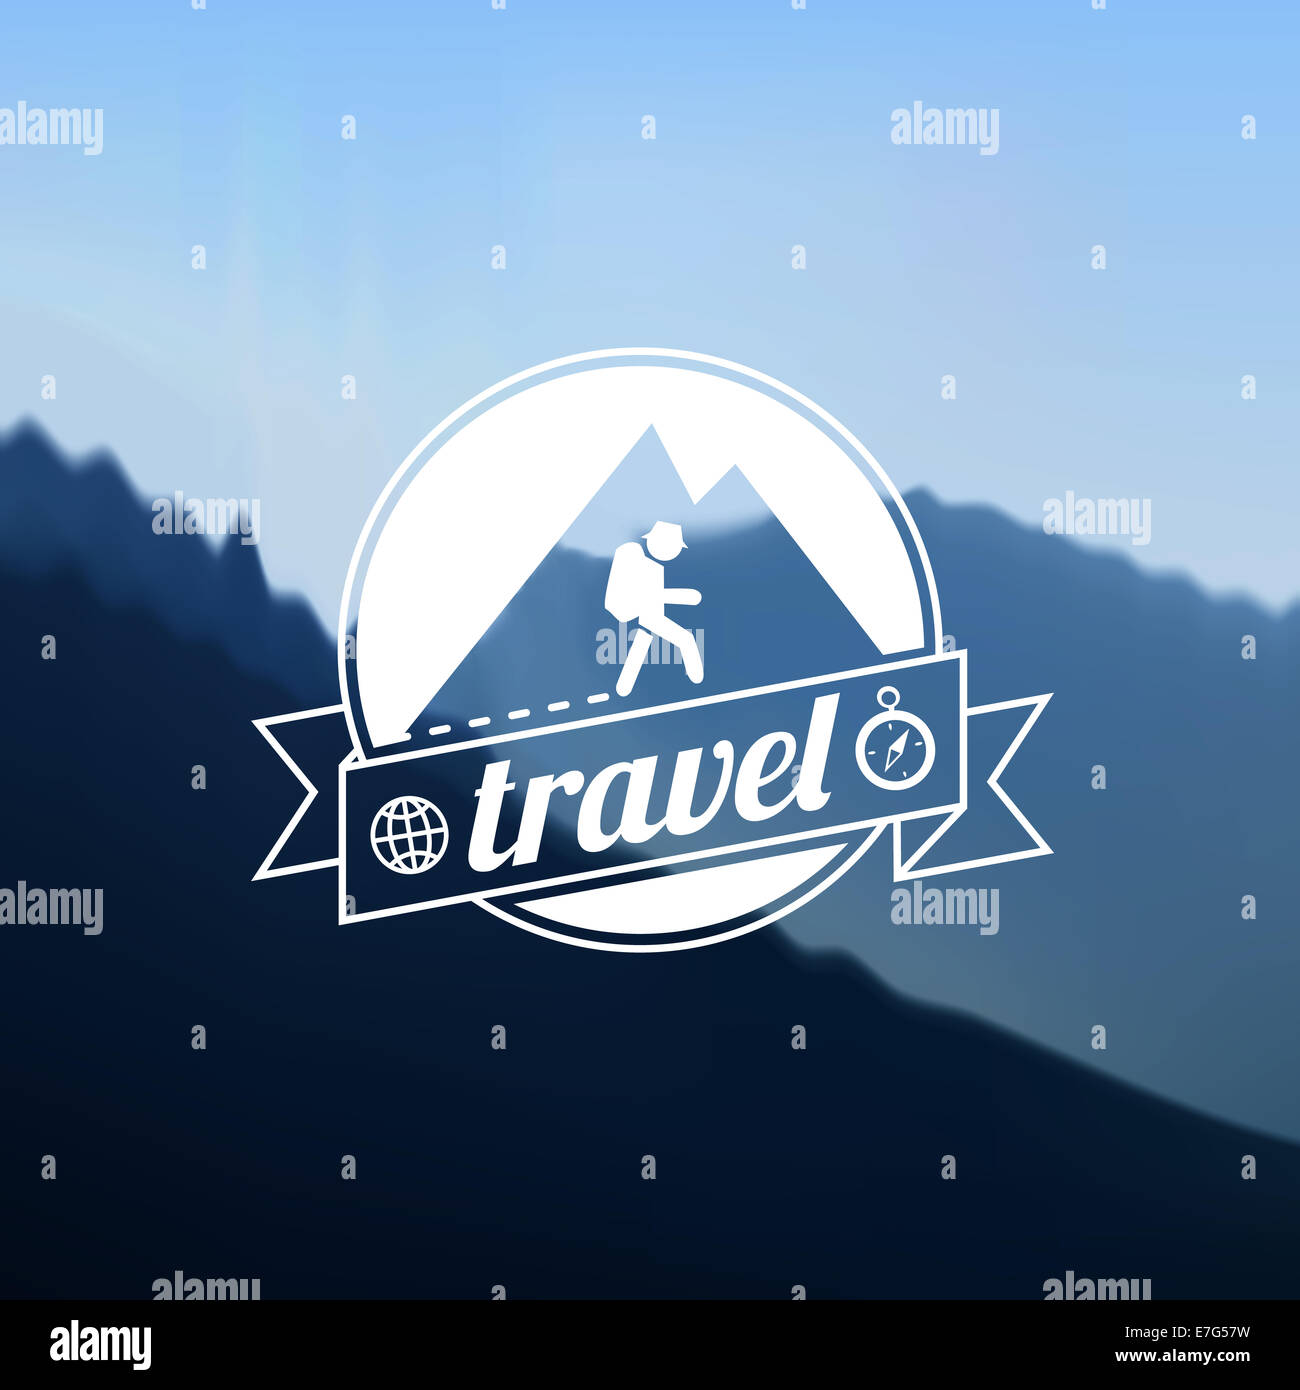 Tourism travel logo design Stock Photo